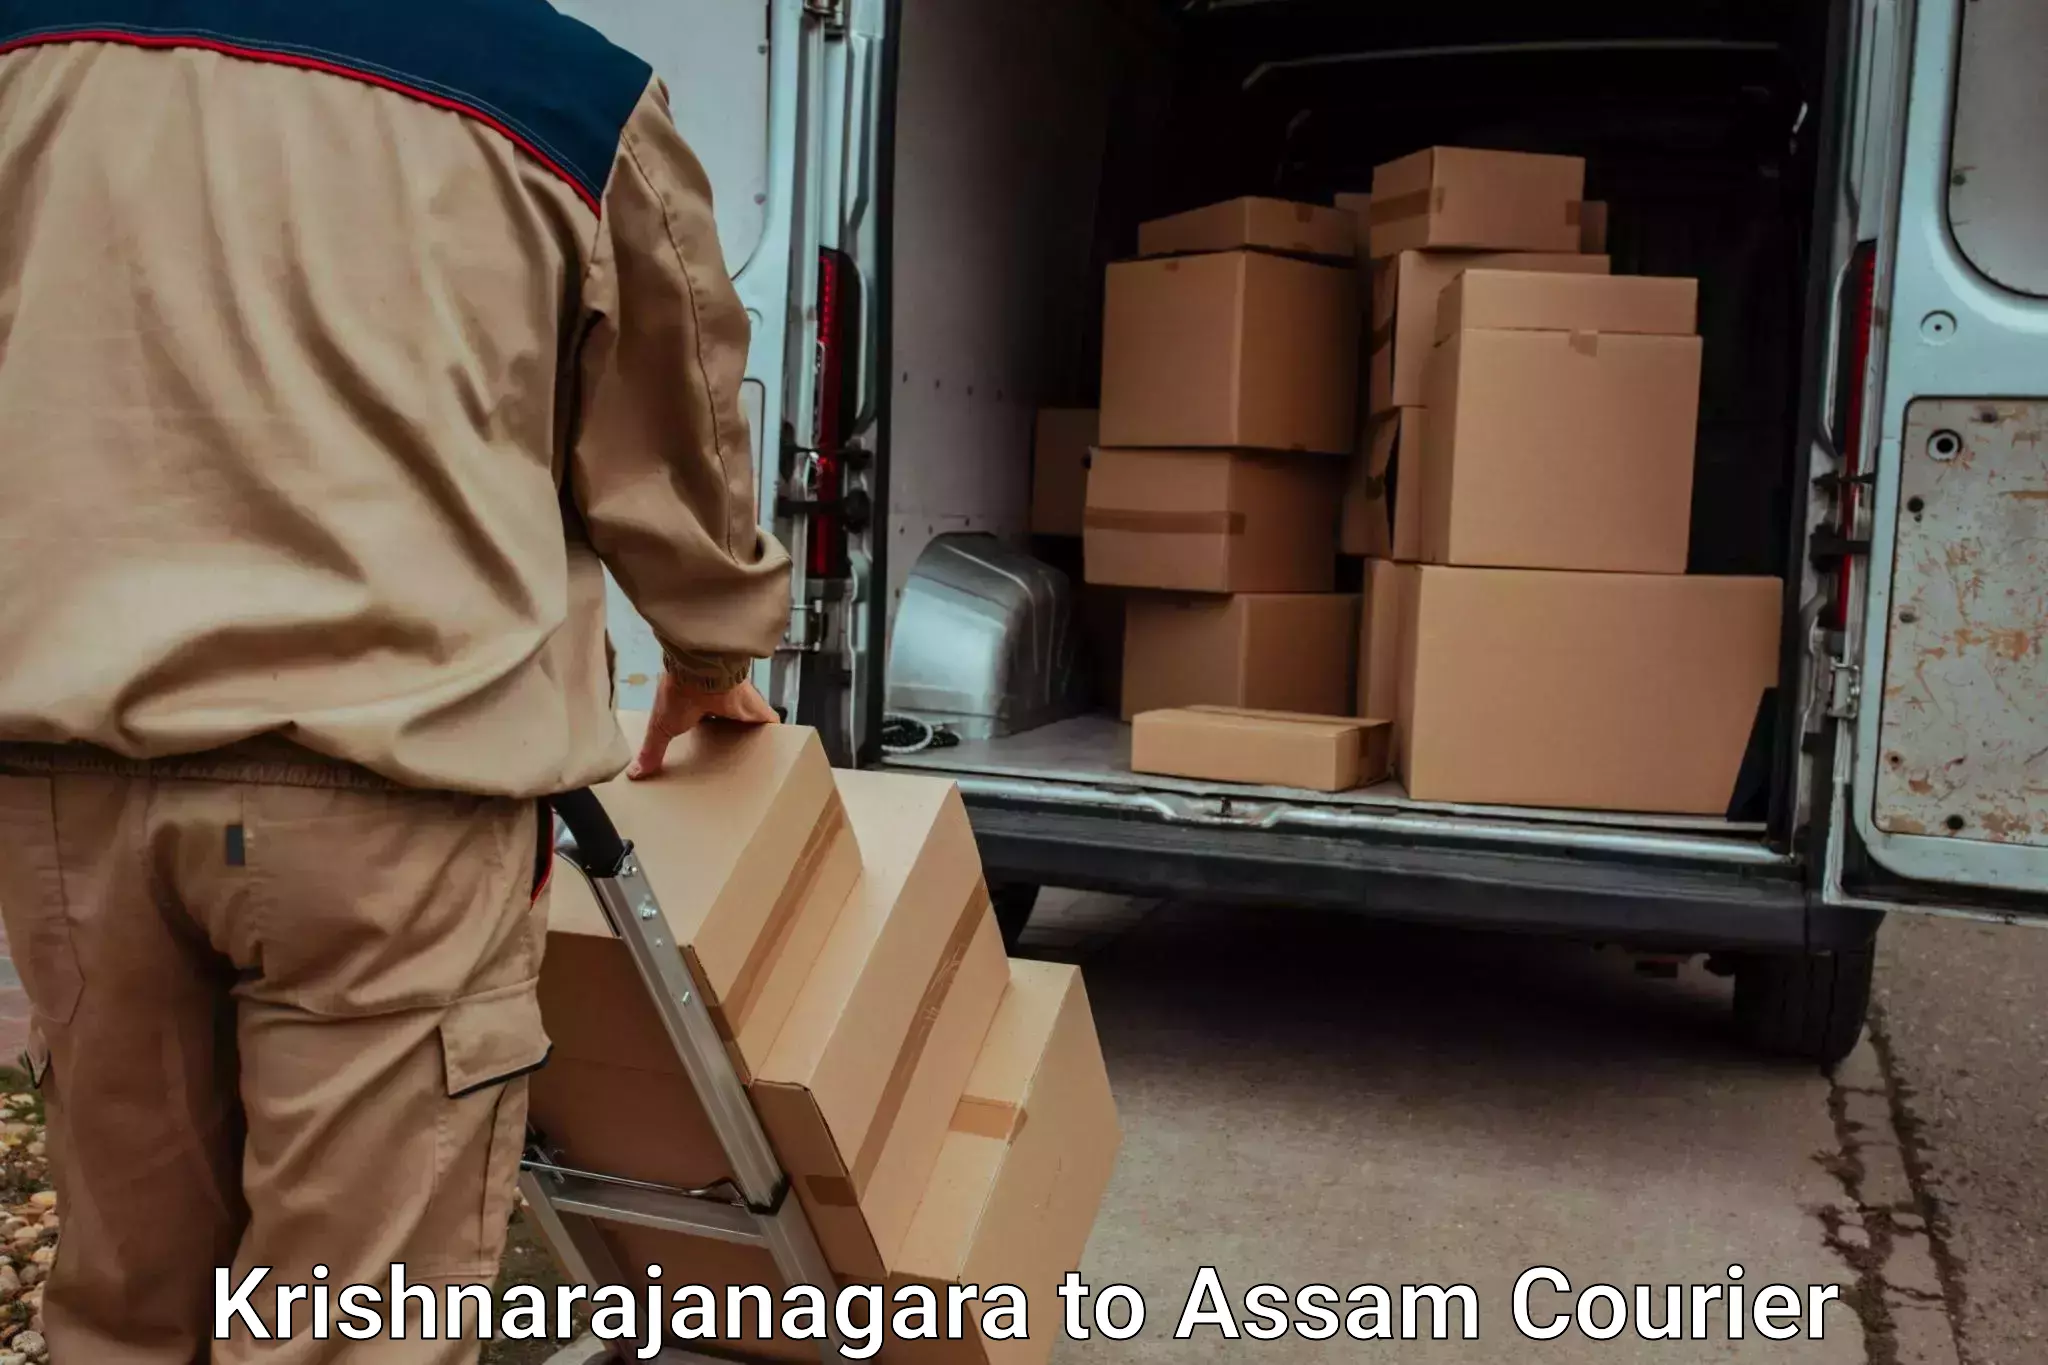 Furniture moving experts Krishnarajanagara to Balapara